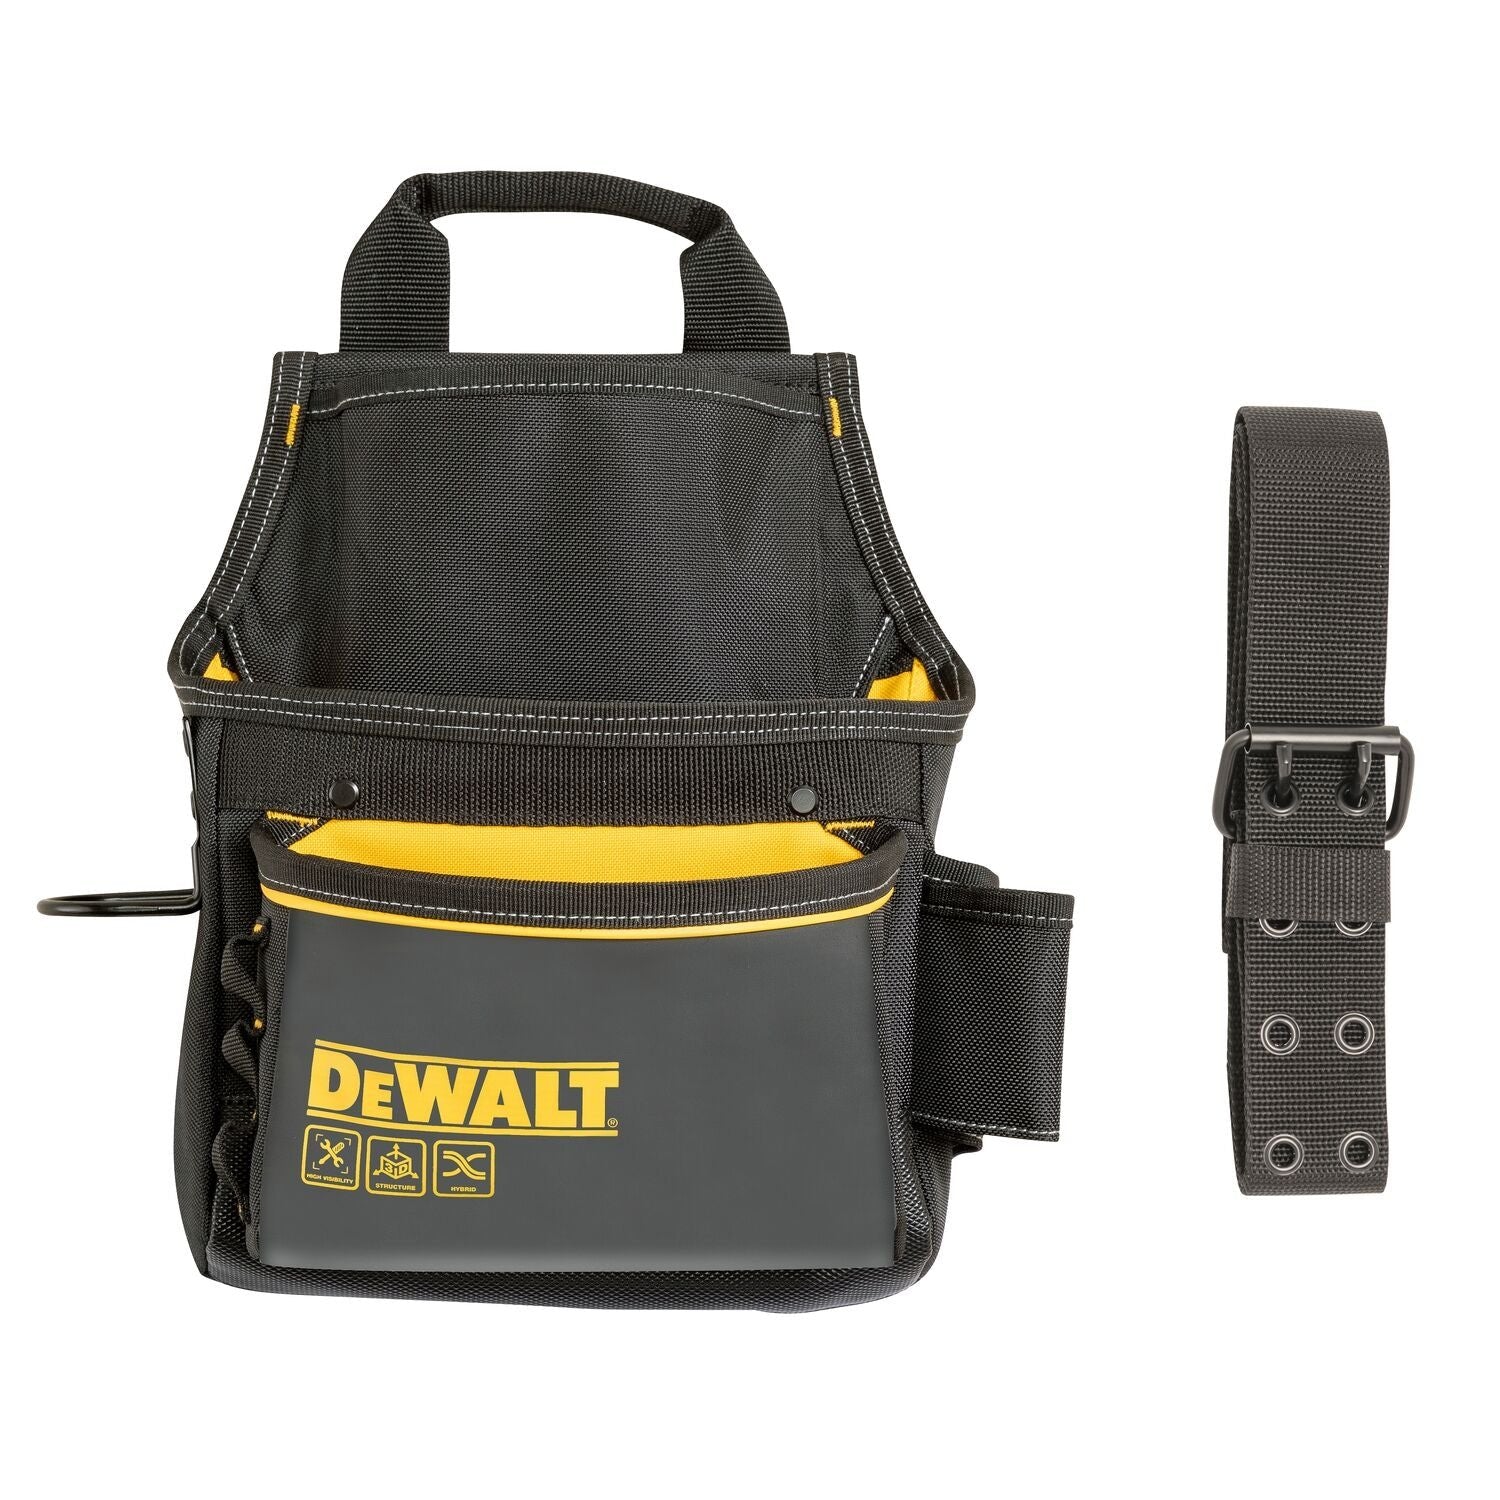 Dewalt DWST540101 - Professional Tool Pouch